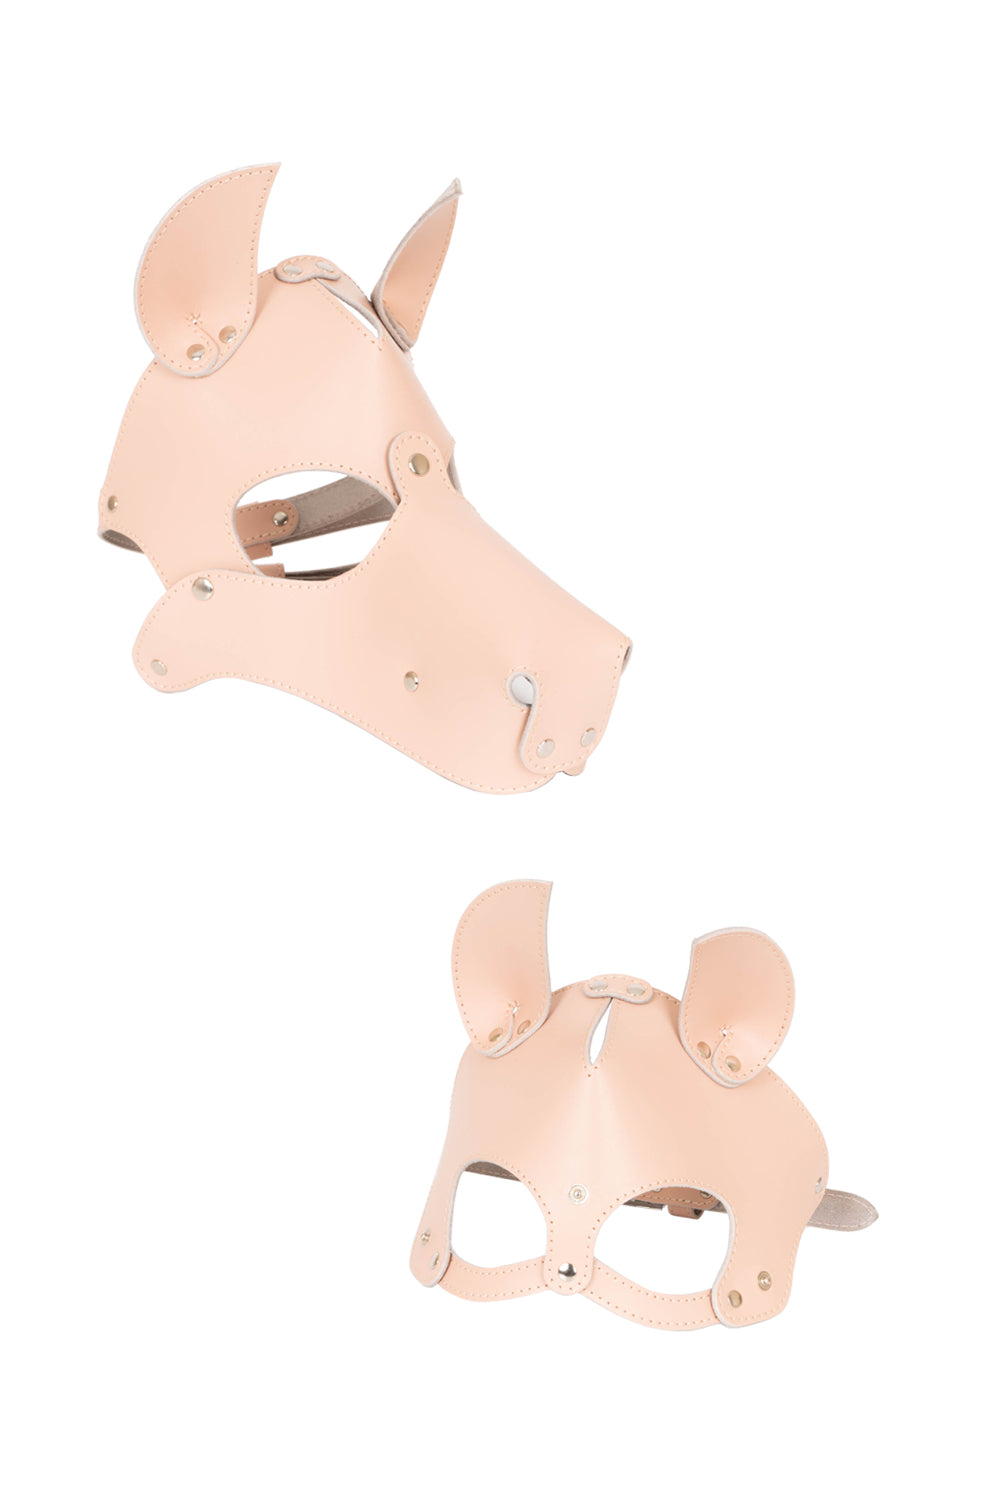 Dog mask with detachable muzzle. Burgundy